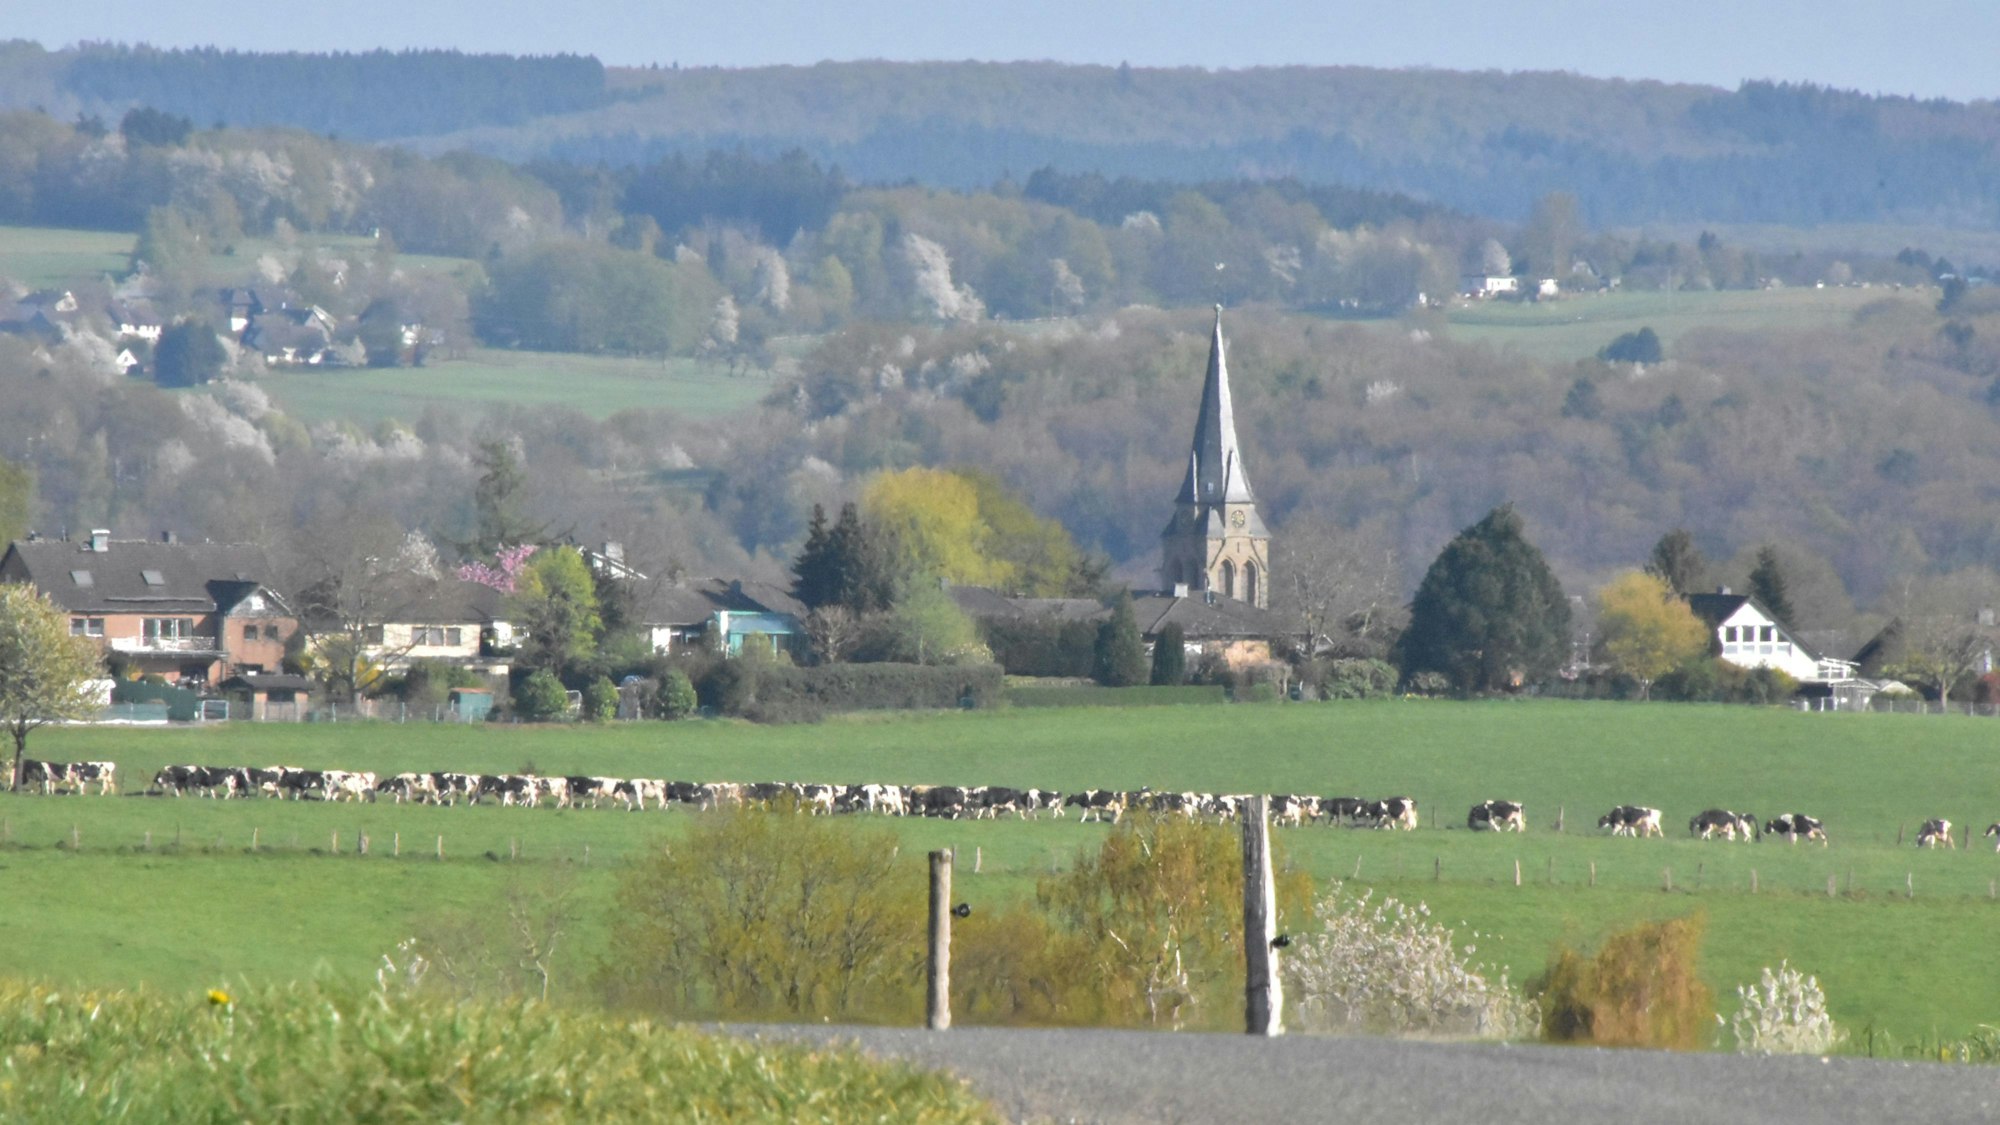 Auf einer Wiese stehen viele Kühe. Dahinter sind Häuser und eine Kirche zu erkennen.